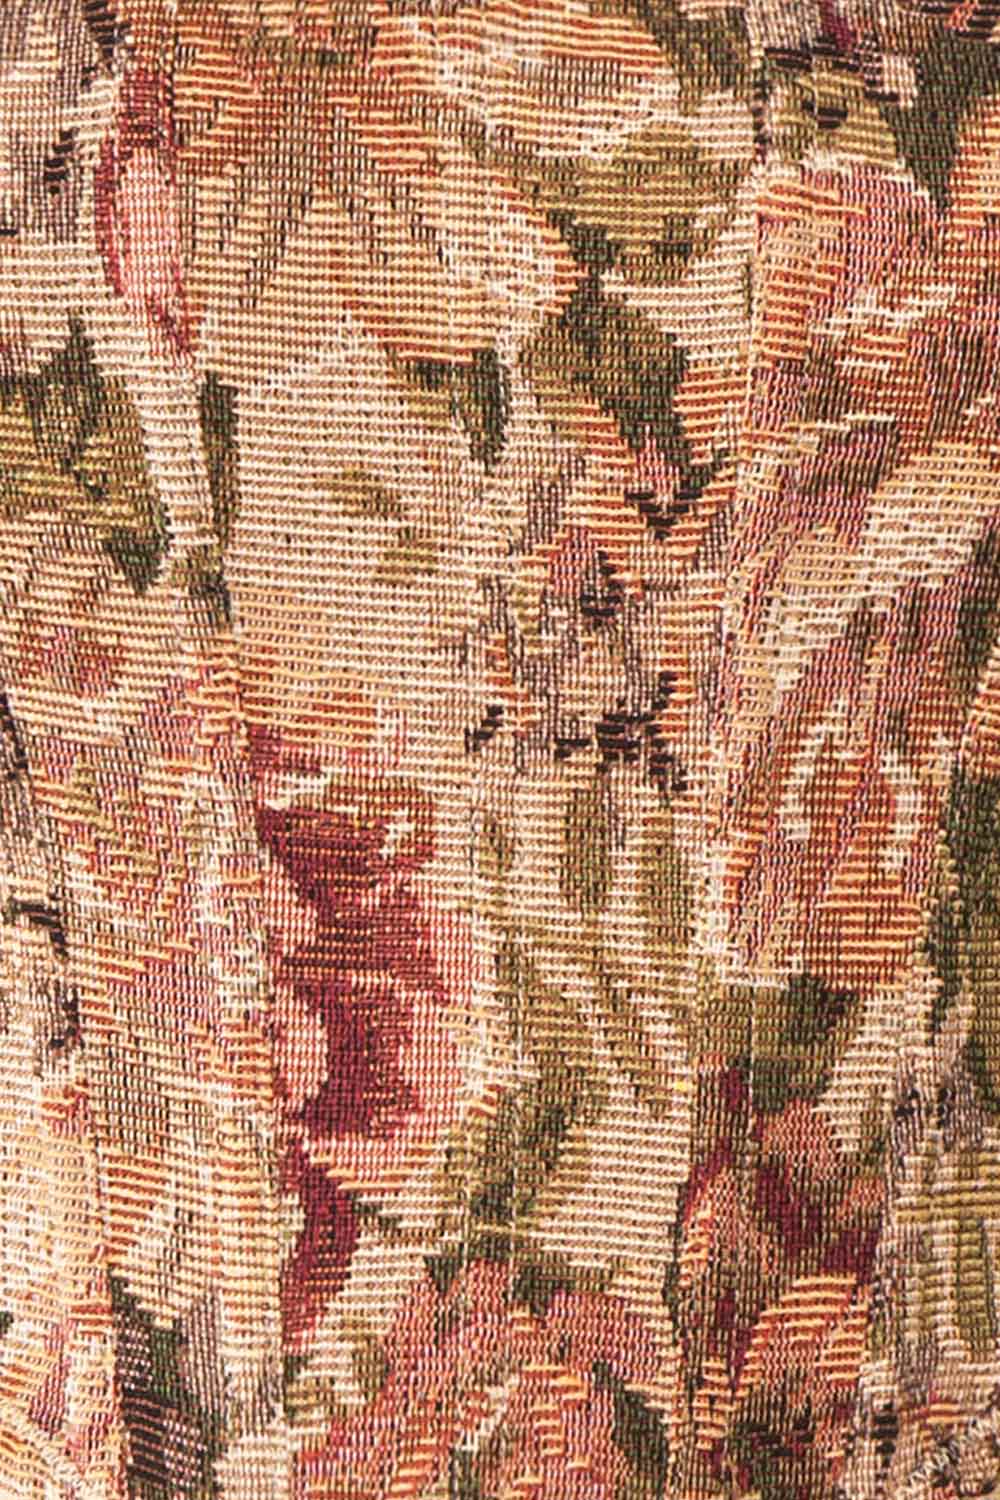 Aubriel Cropped Floral Corset Top | Boutique 1861 fabric